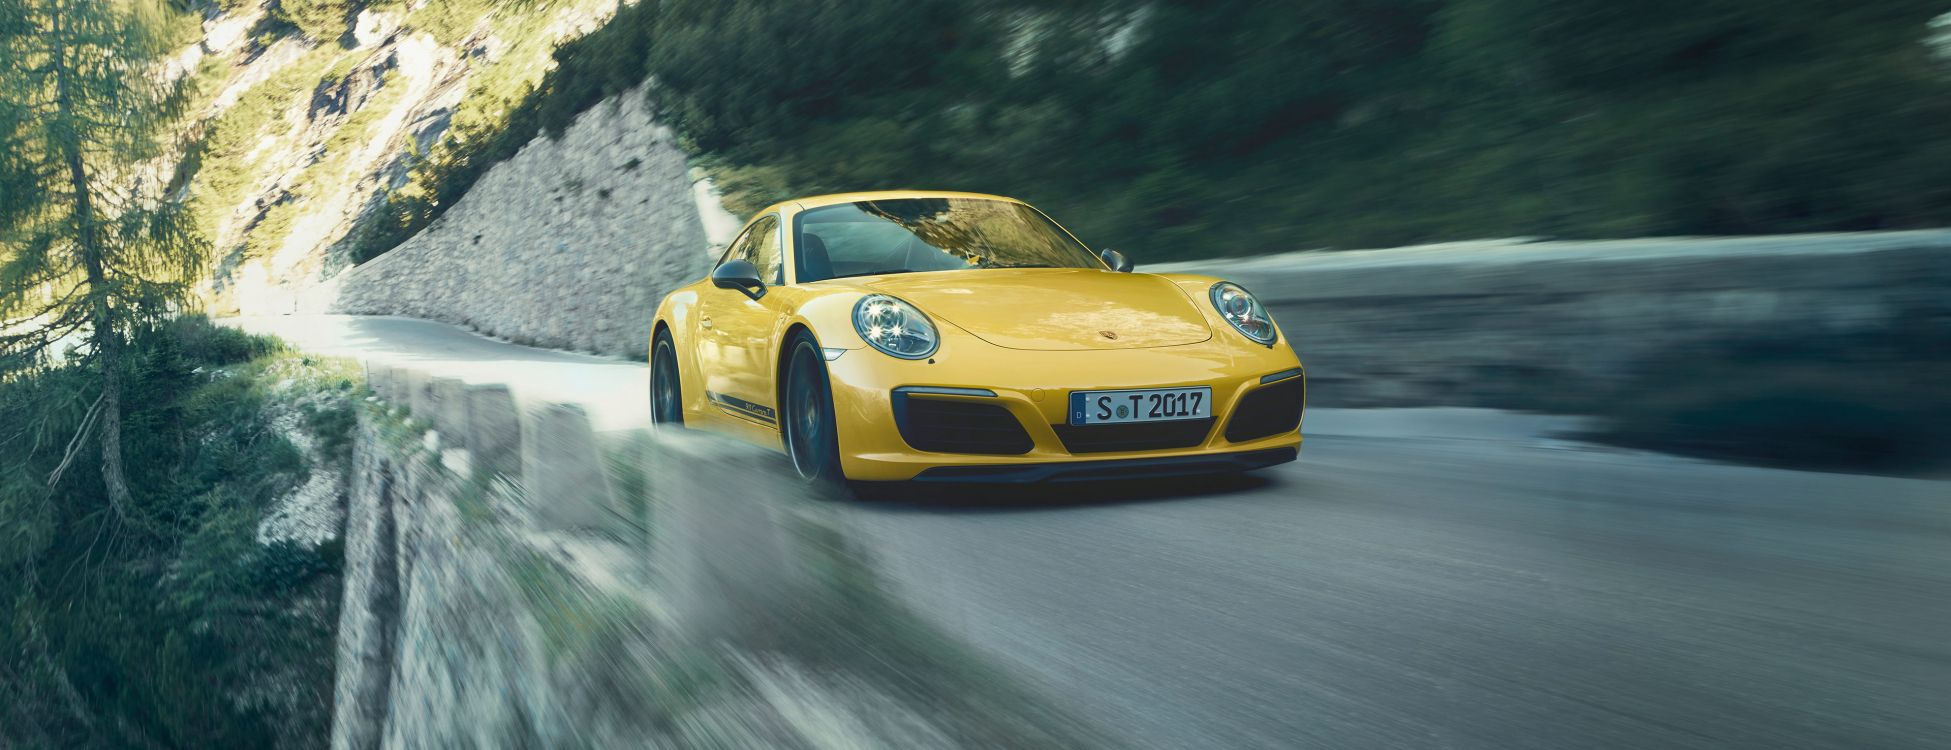 Porsche 911 Amarillo en la Carretera Durante el Día. Wallpaper in 3840x1476 Resolution